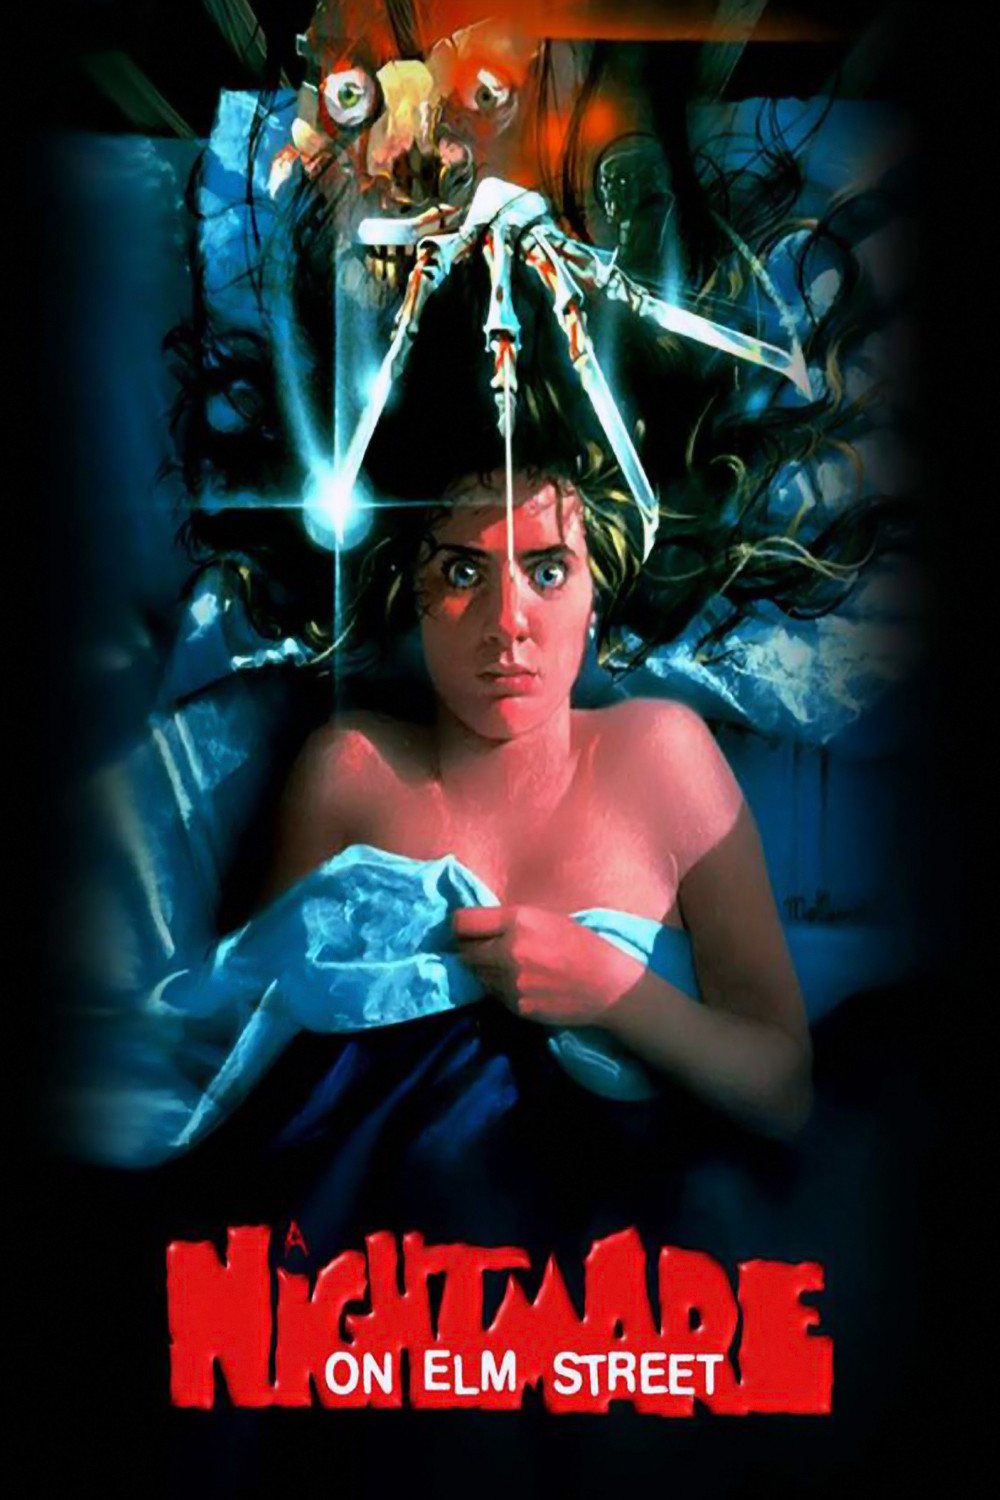 a nightmare on elm street poster Nightmare on Elm Street